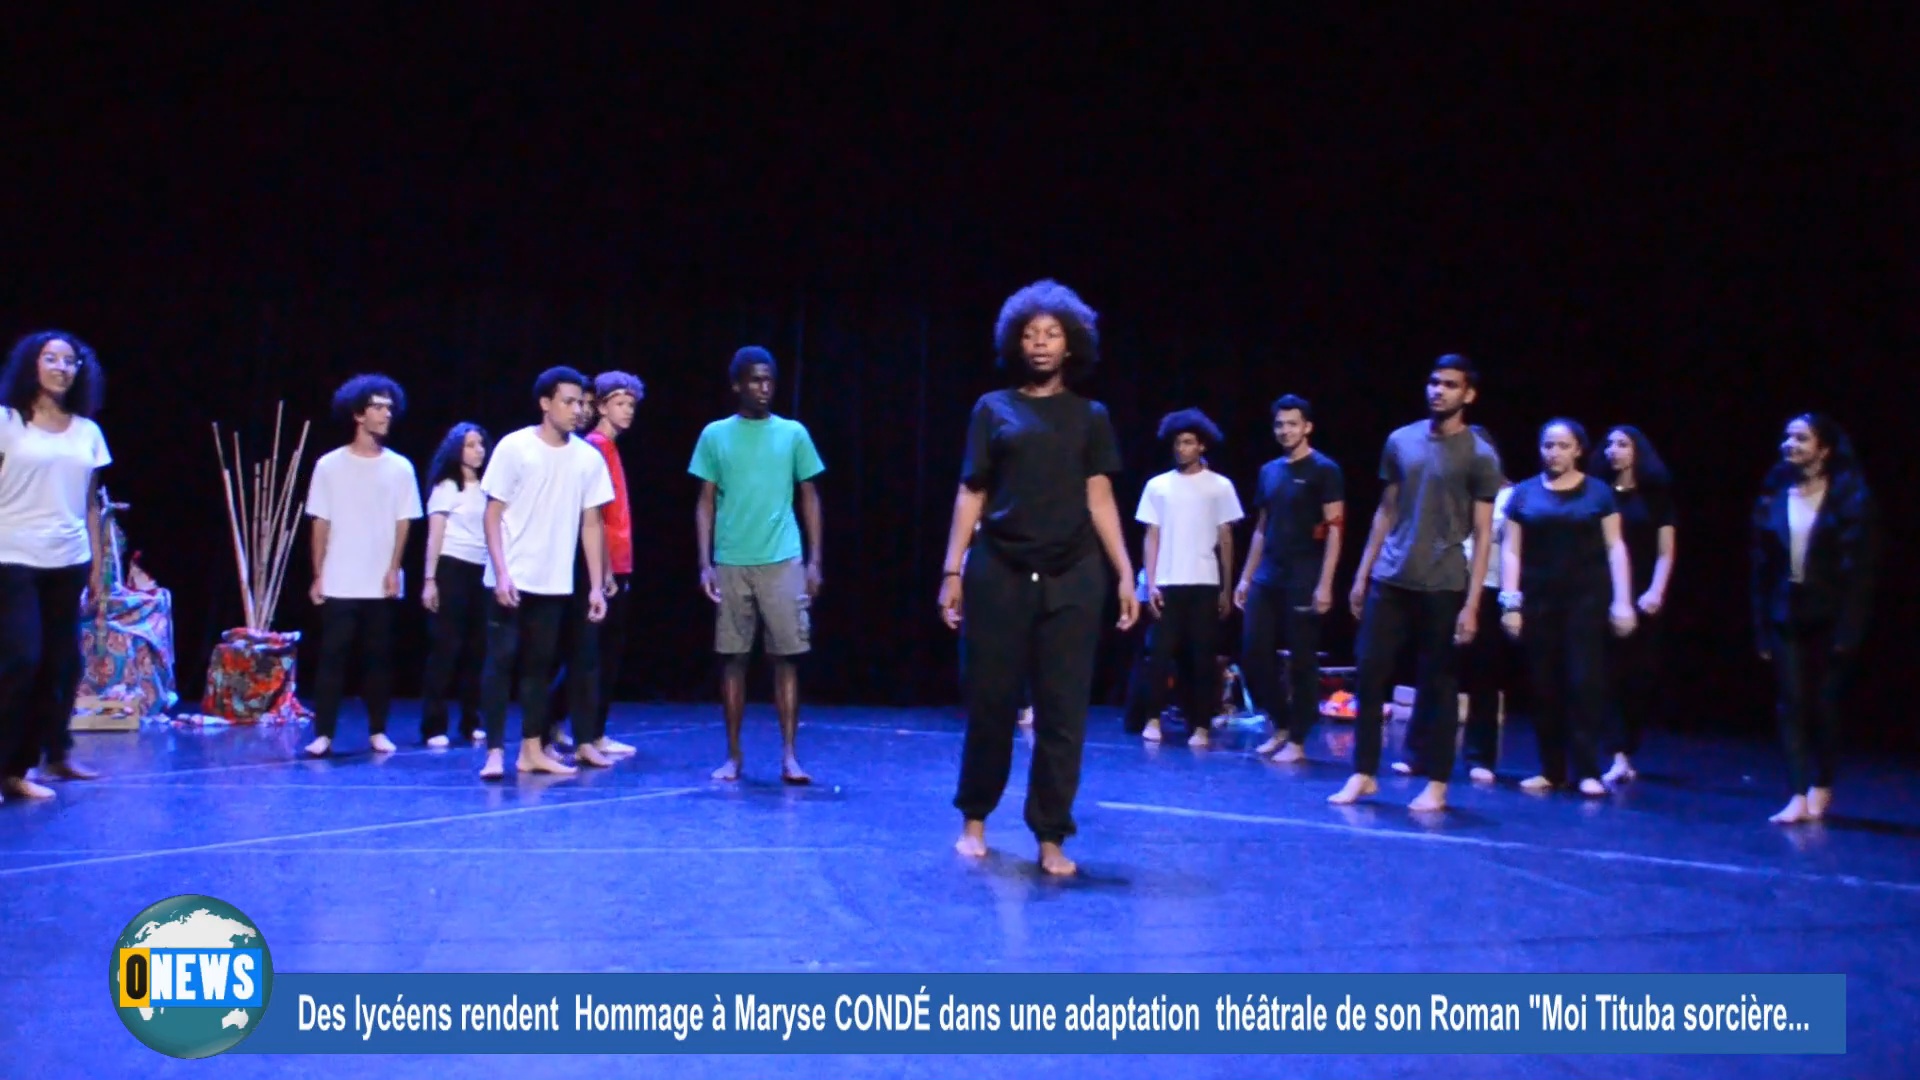 [Vidéo] Des lycéens rendent hommage à Maryse CONDÉ à travers une adaptation théâtrale à Sarcelles